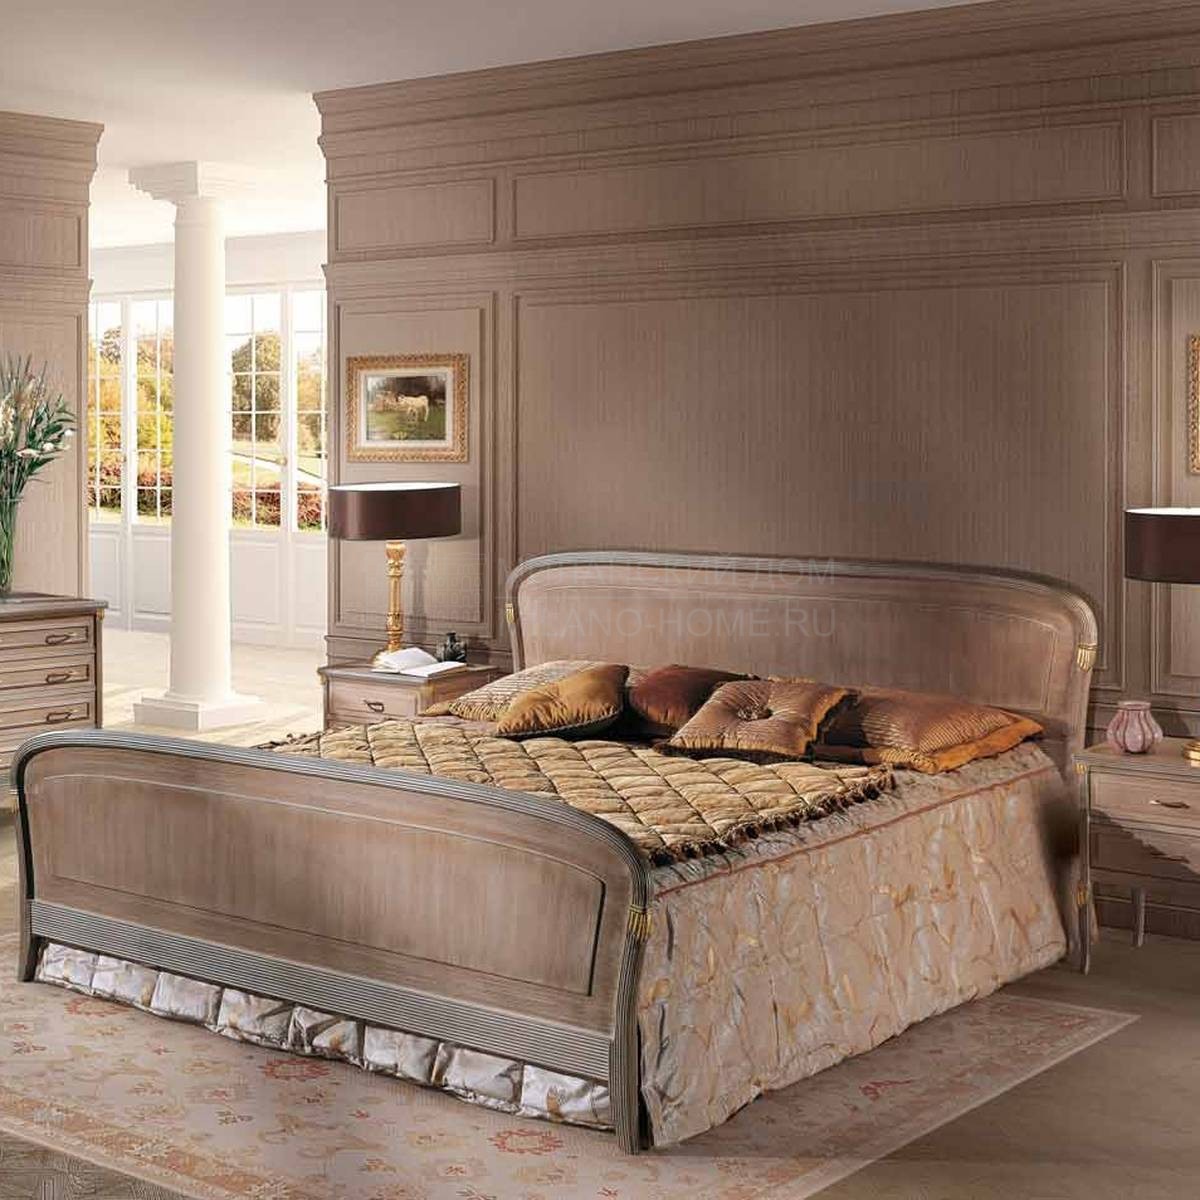 Кровать с деревянным изголовьем Ravel/3010-P21 из Италии фабрики ANGELO CAPPELLINI 